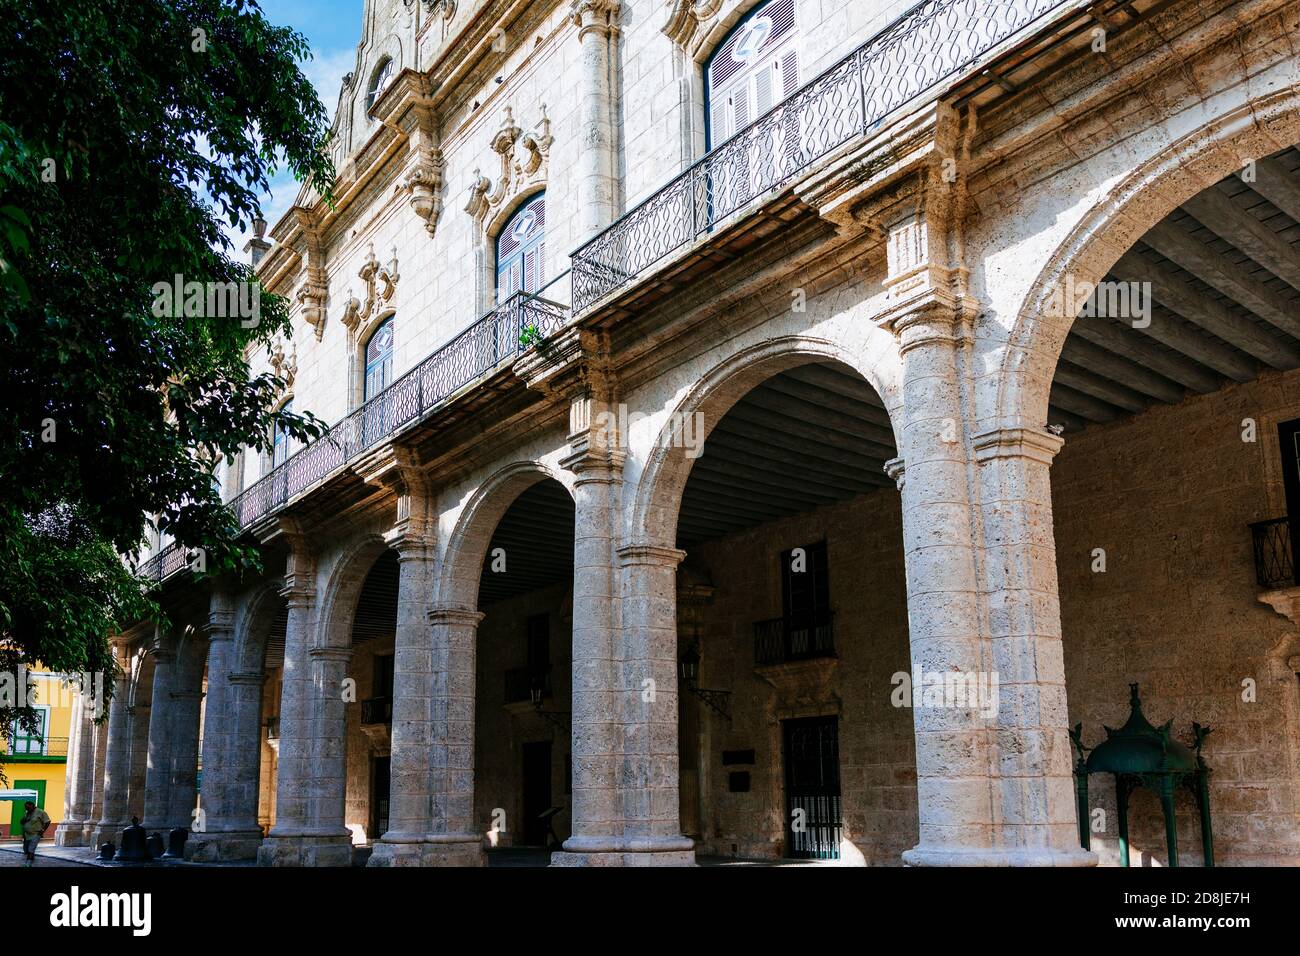 Palacio de los Capitanes Generales, Casa de gobierno - Palace of the General Captains, Government House. Plaza de Armas. La Habana - La Havana, Cuba, Stock Photo